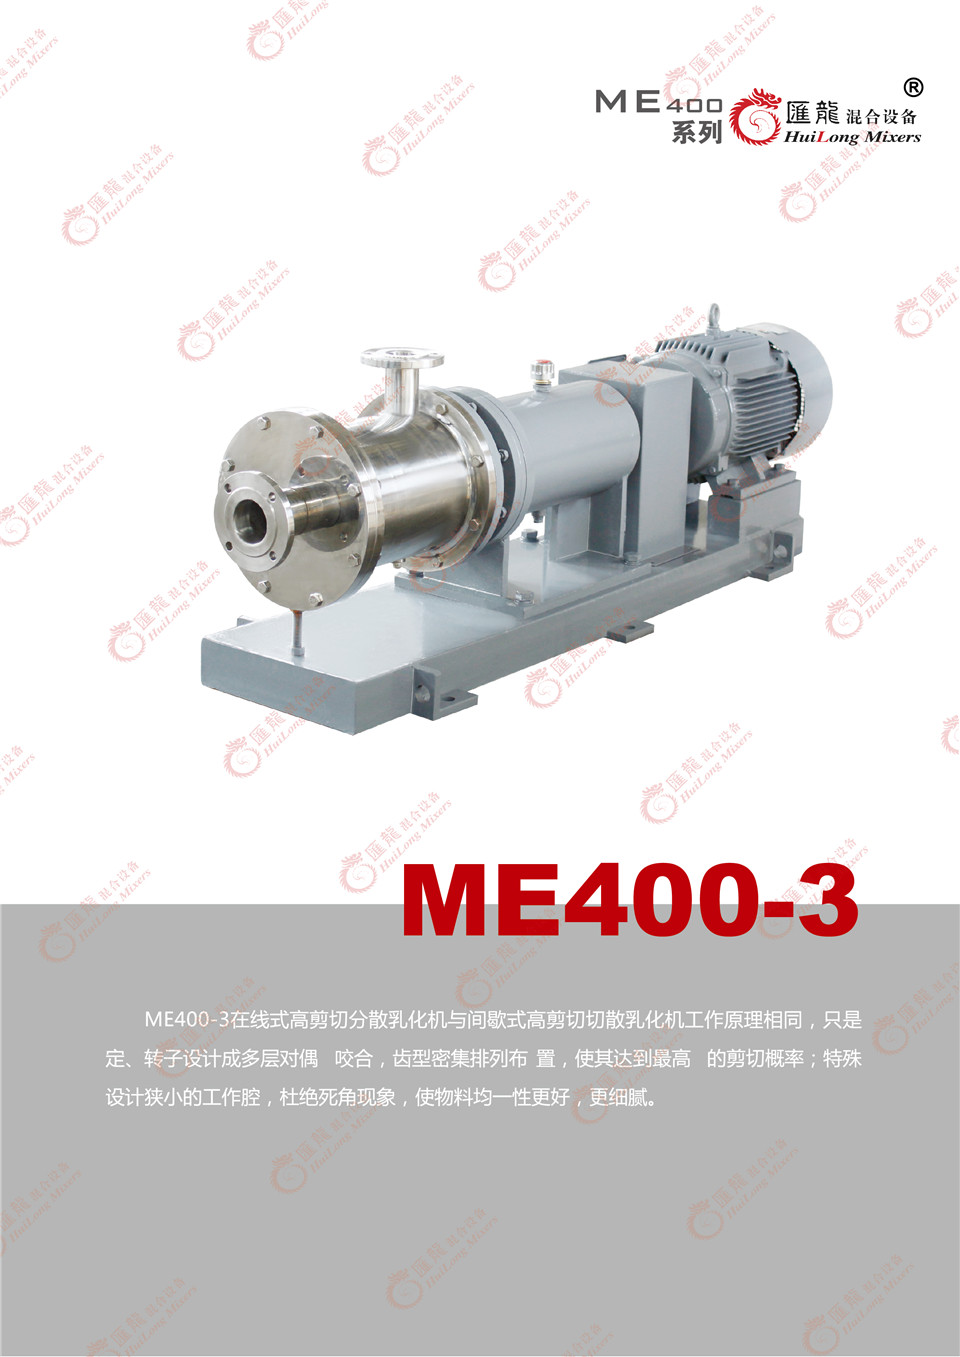 “ME400A型乳化机”/